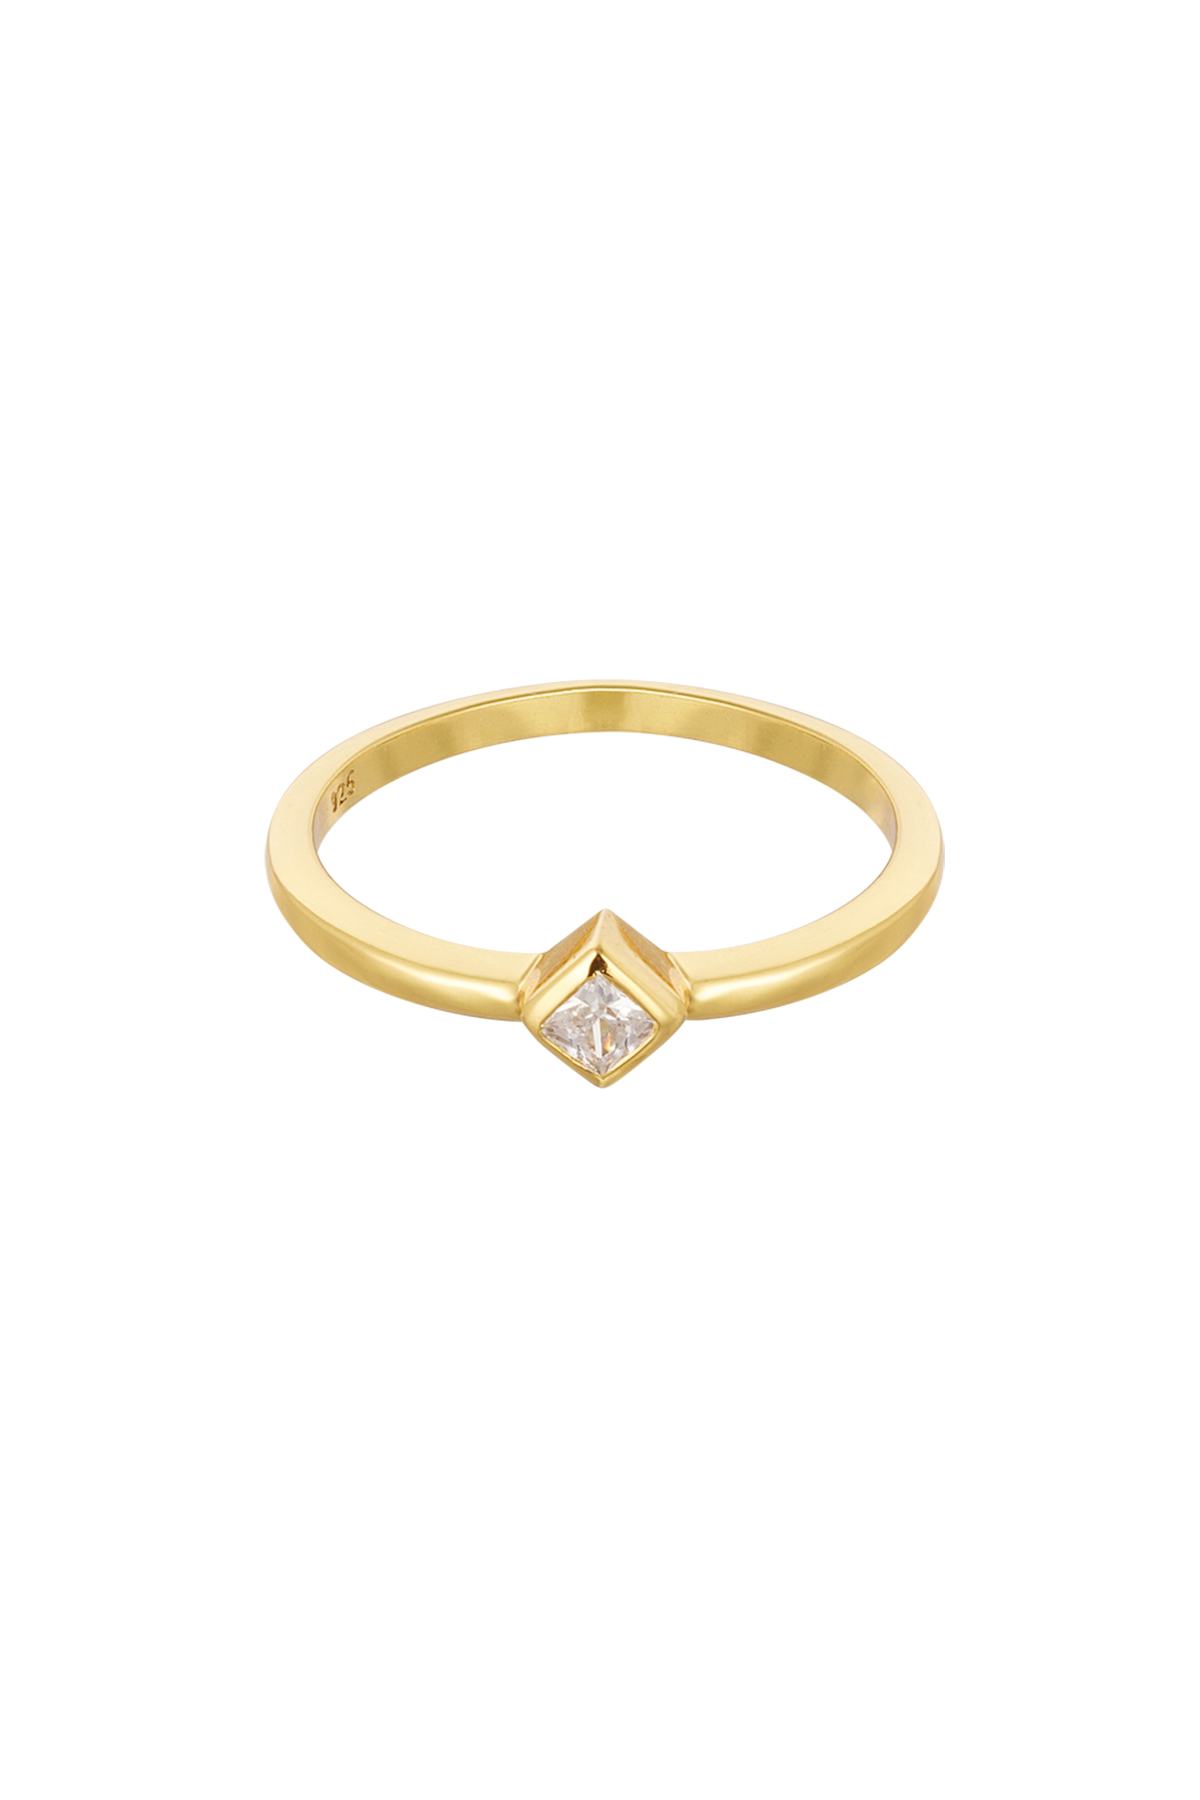 Ring Diamantstein – 925er Silber – Gold – 16 h5 